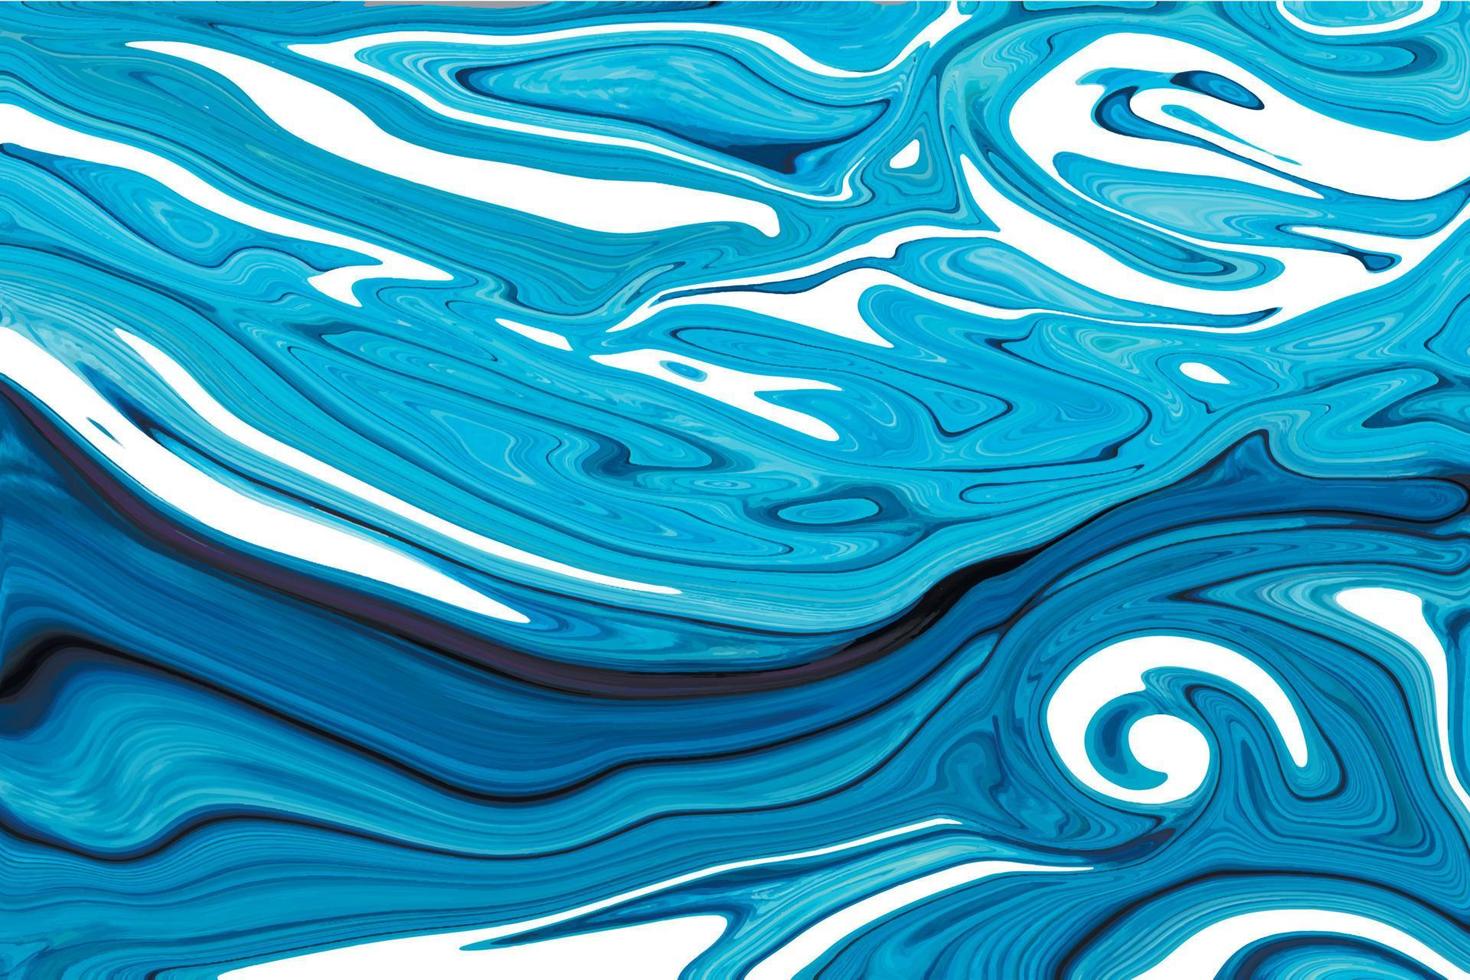 sfondo in marmo liquido toni blu motivo decorativo artistico fluido vettore